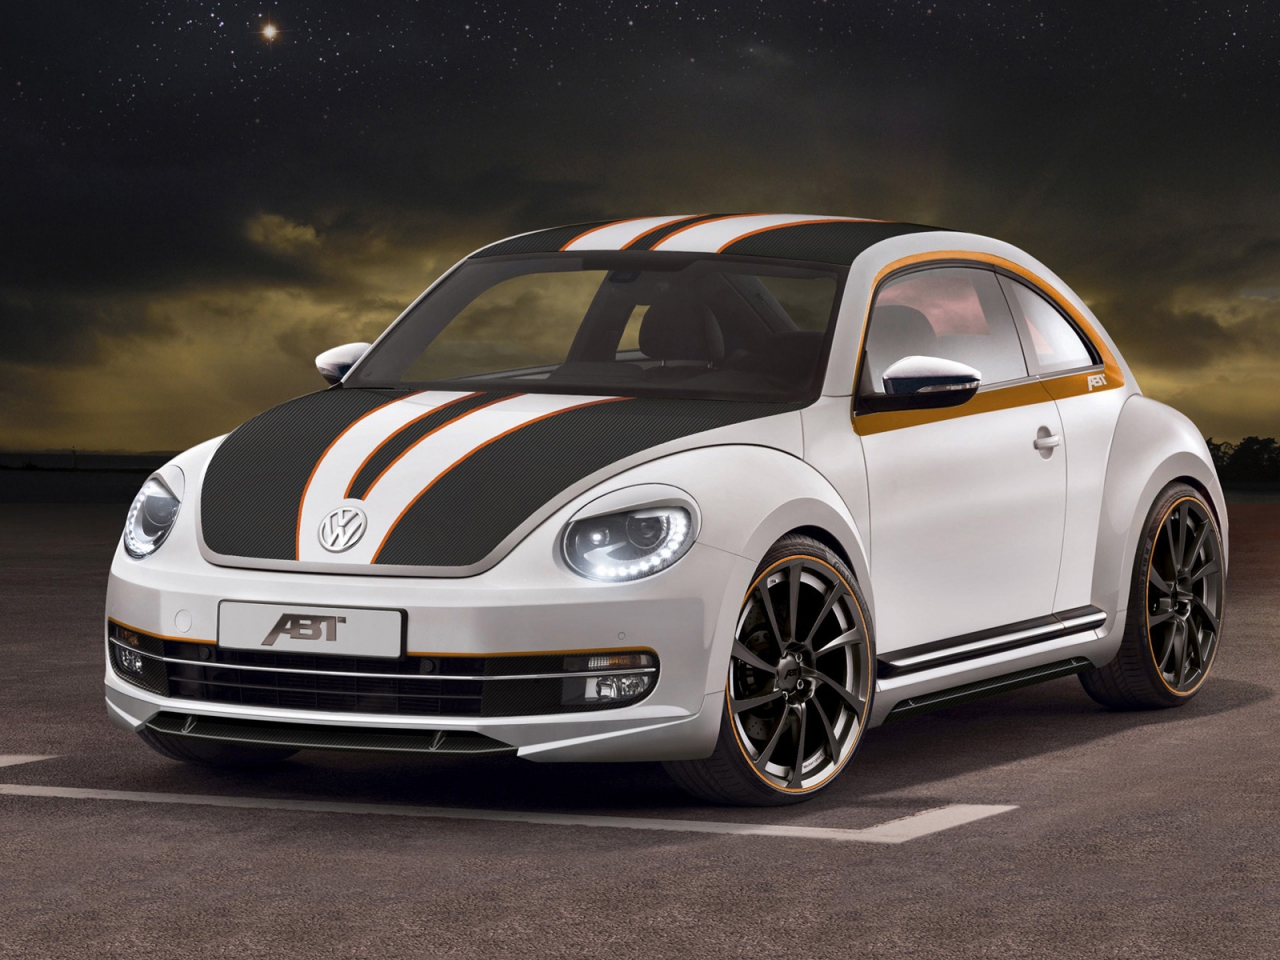 2012 ABT Volkswagen Beetle for 1280 x 960 resolution